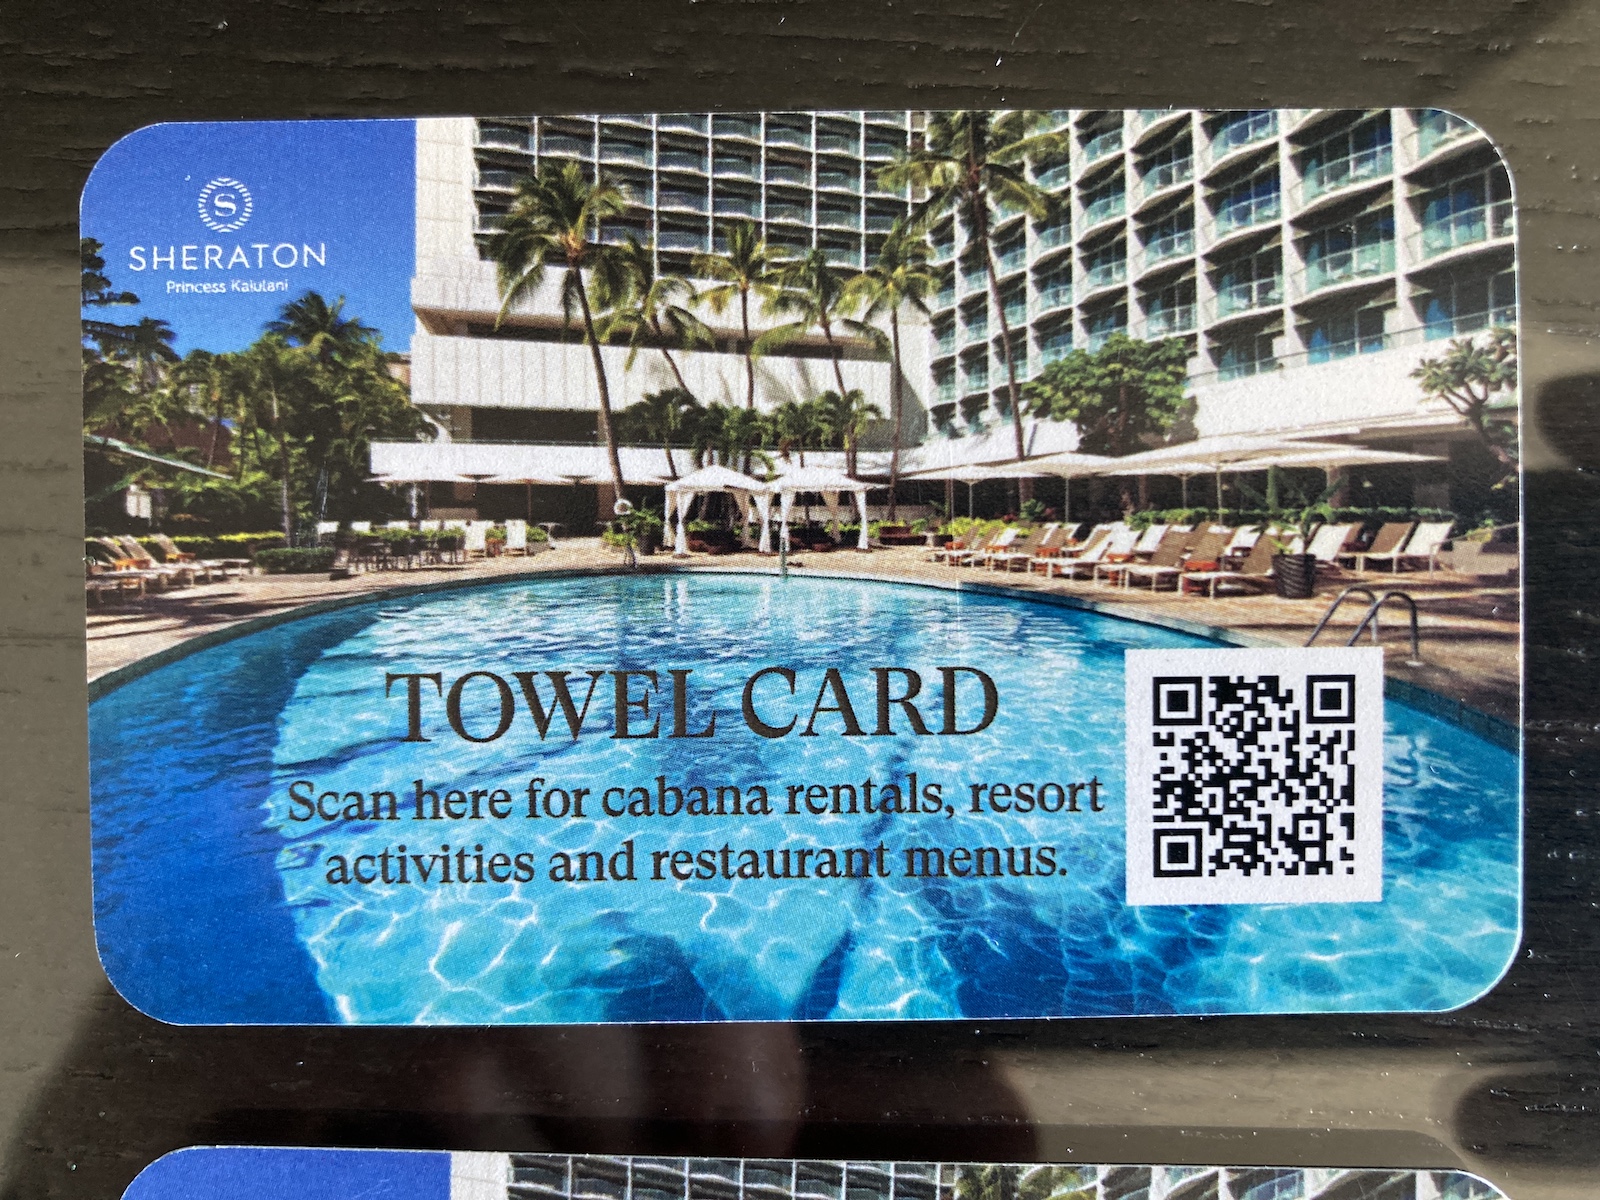 Image of towel card at Sheraton Princess Kaiulani in Waikiki